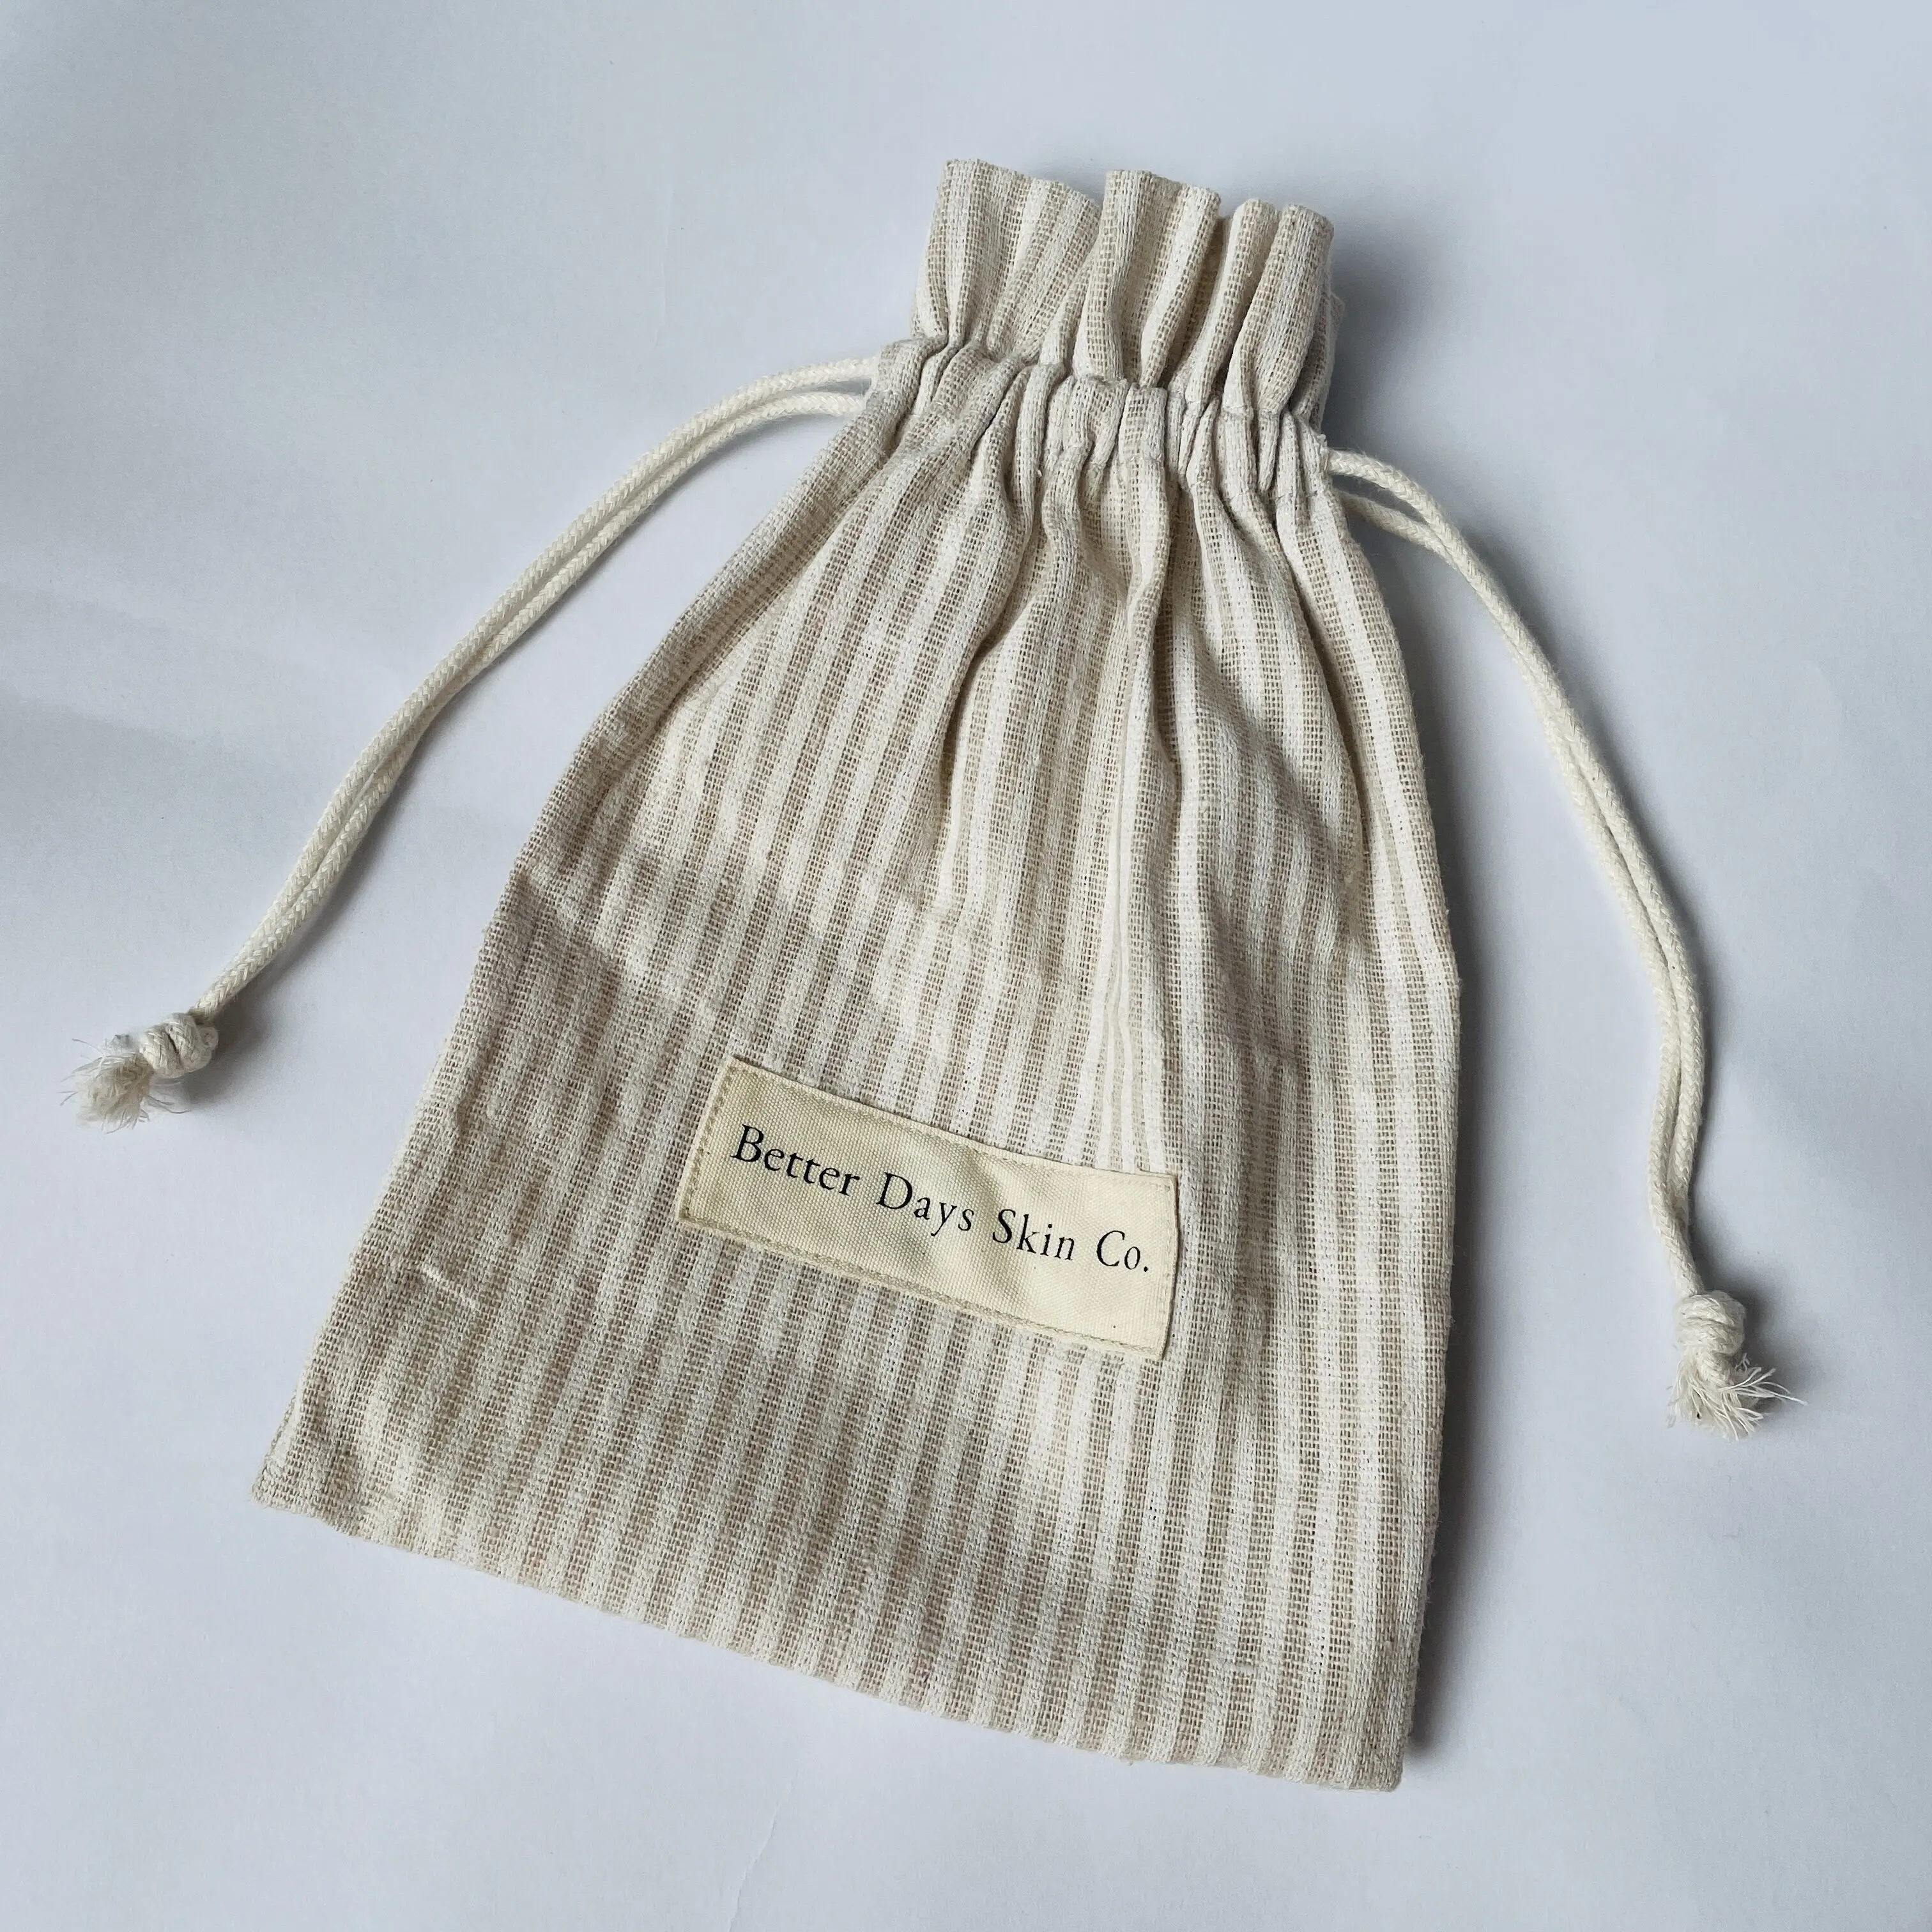 Sacchetto regalo cosmetico con coulisse in cotone di lino organico ecologico stampato personalizzato con doppia corda